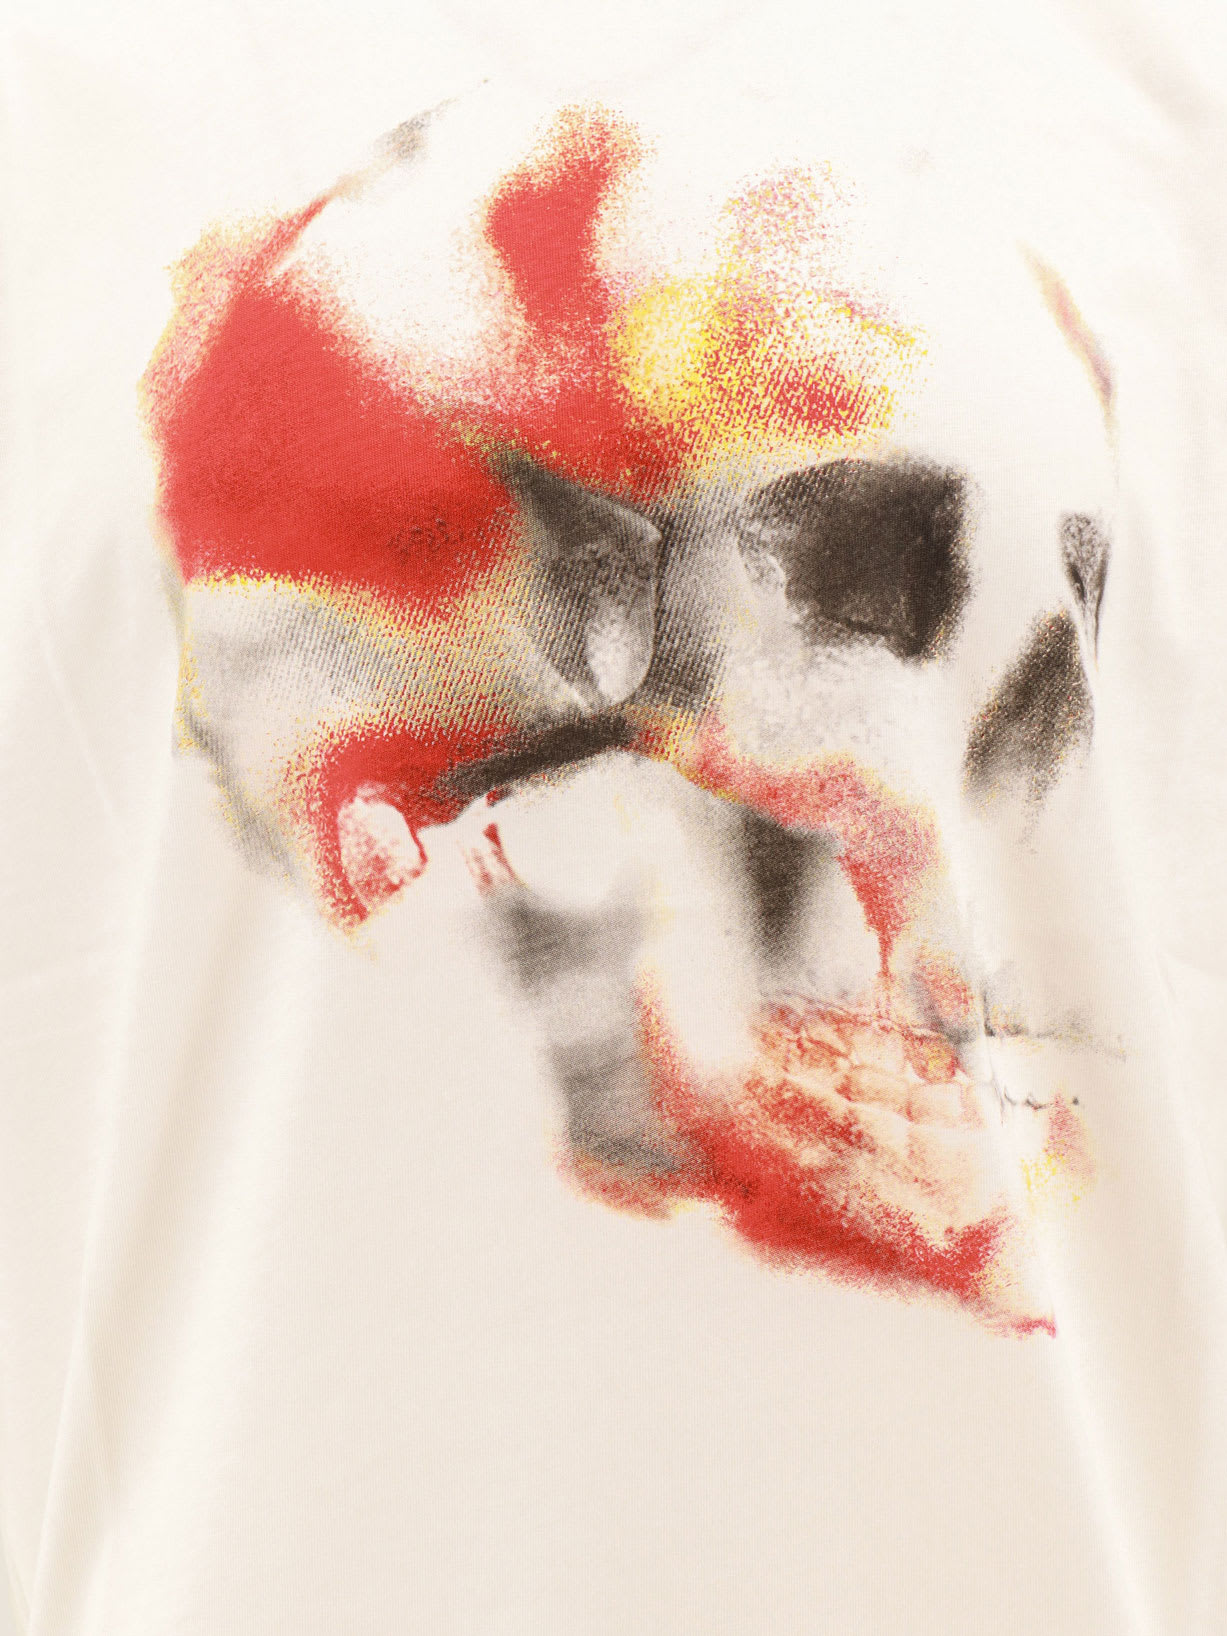 Shop Alexander Mcqueen T-shirt In White/red/black